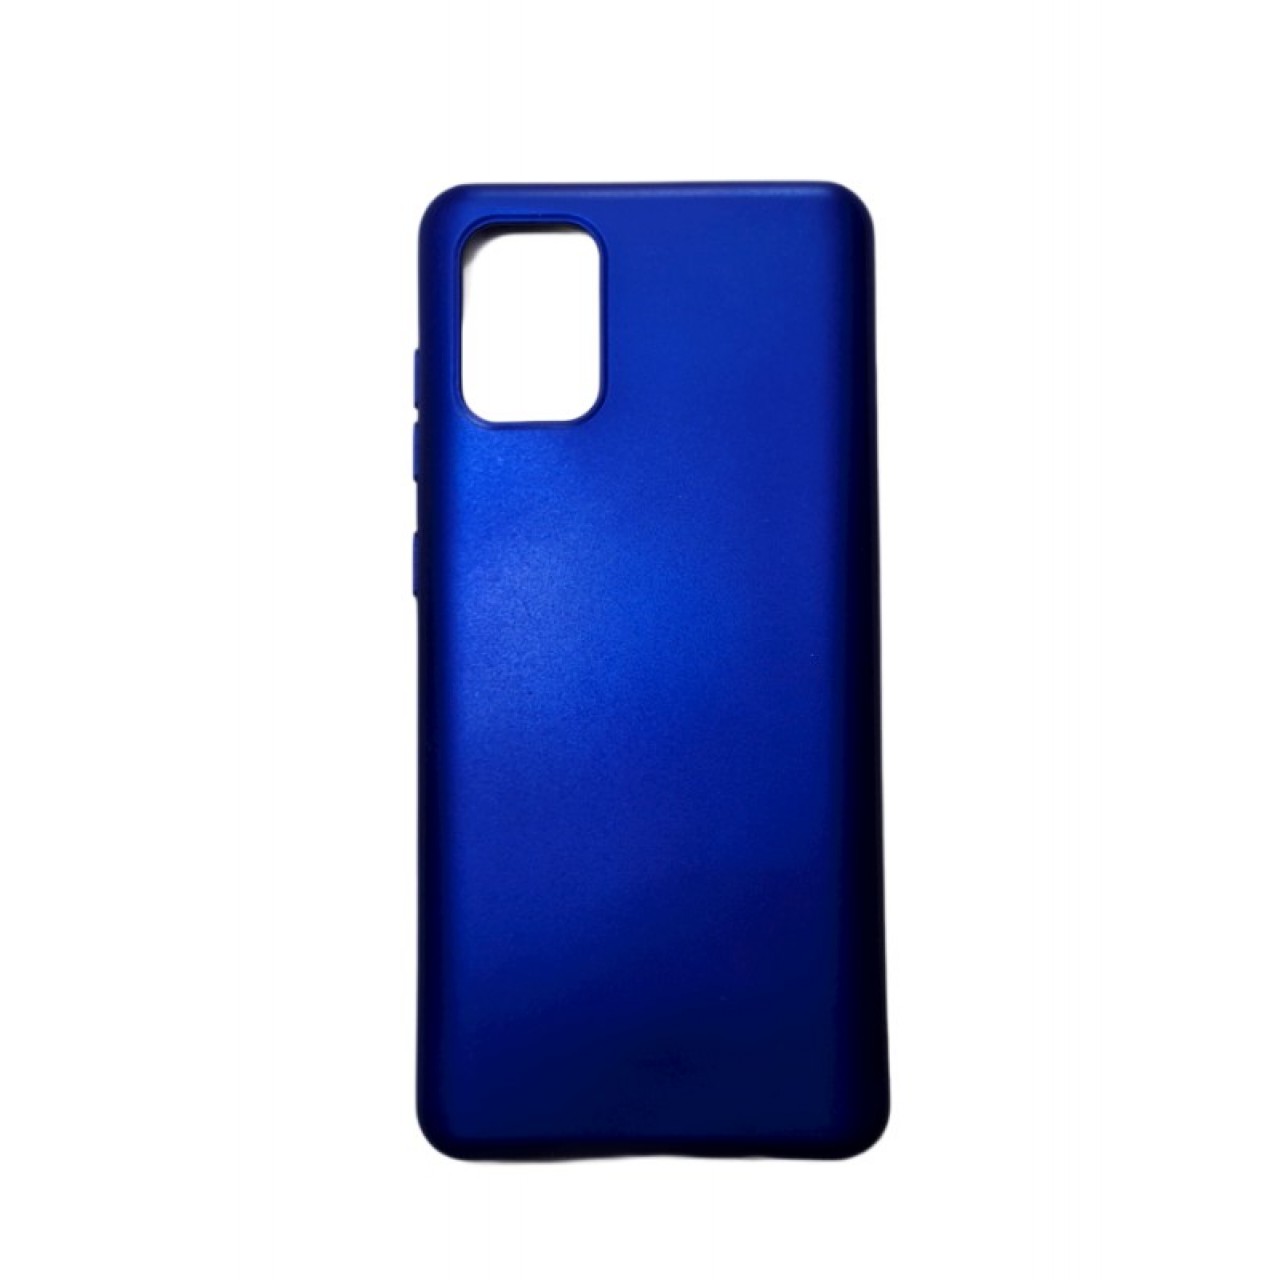 Θήκη Samsung Galaxy S20 PLUS Silicone soft-touch cover - 5095 - Μπλε - ΟΕΜ